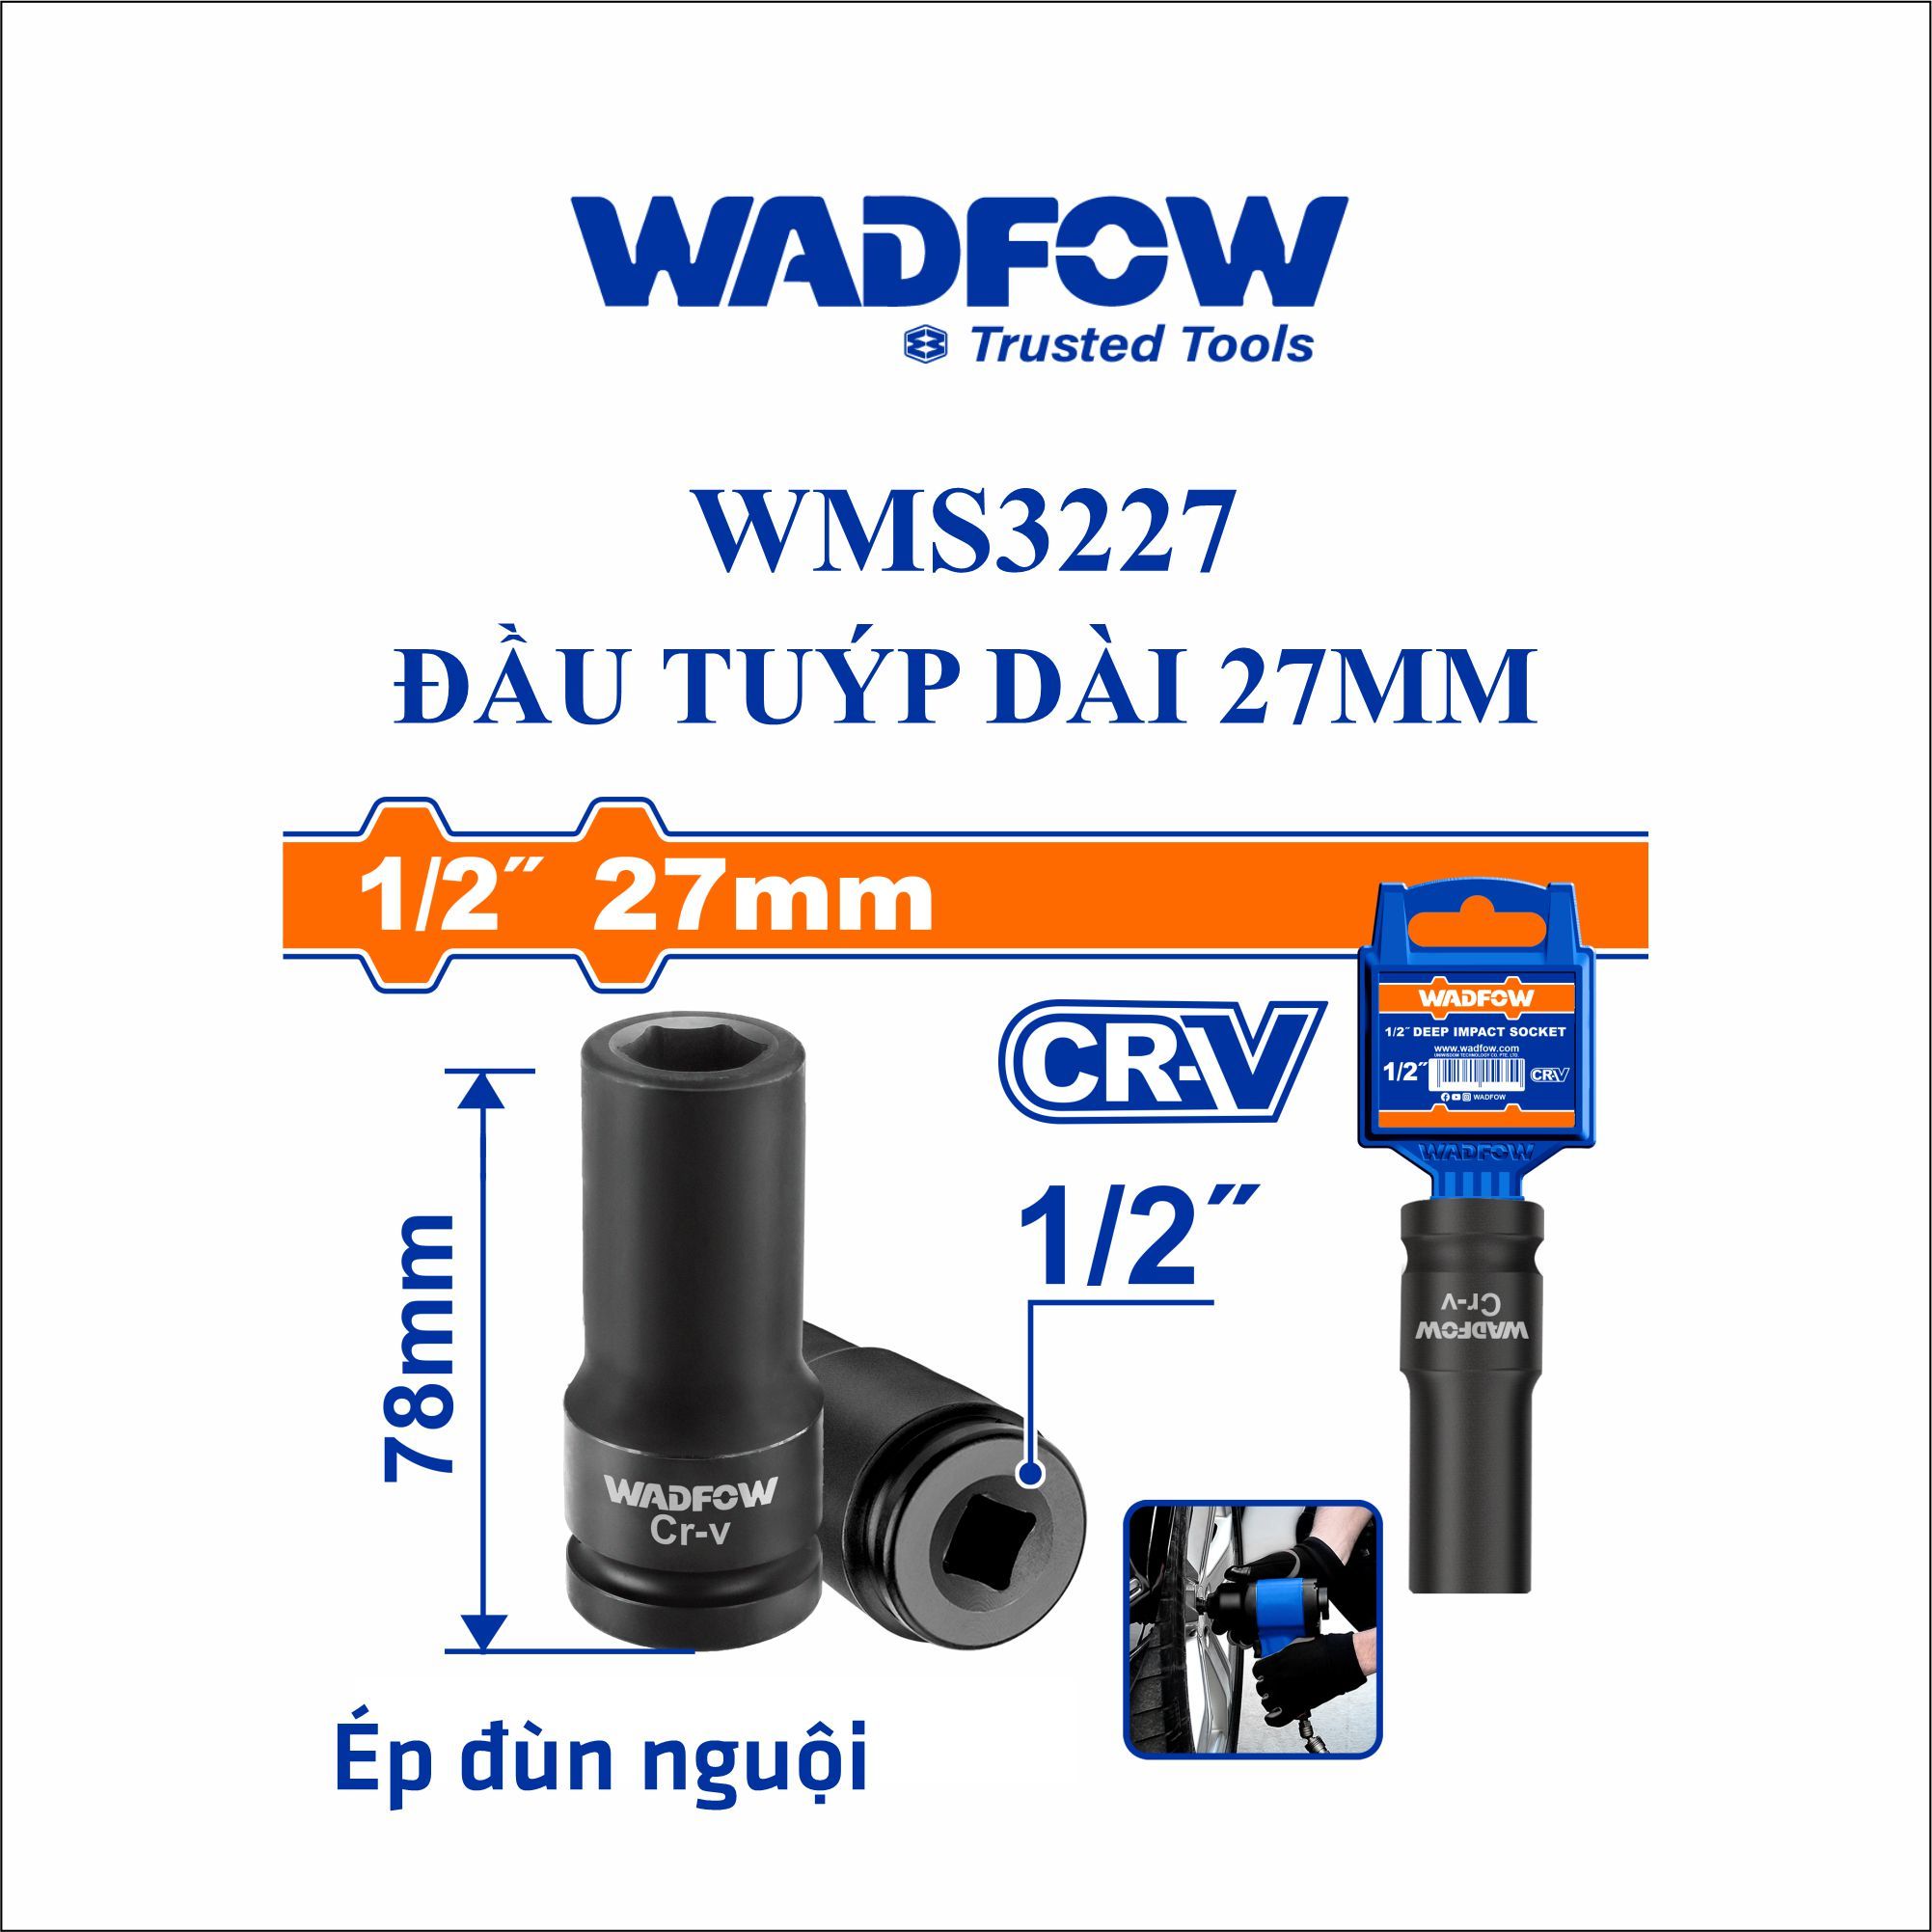  Đầu tuýp dài 27mm WADFOW WMS3227 